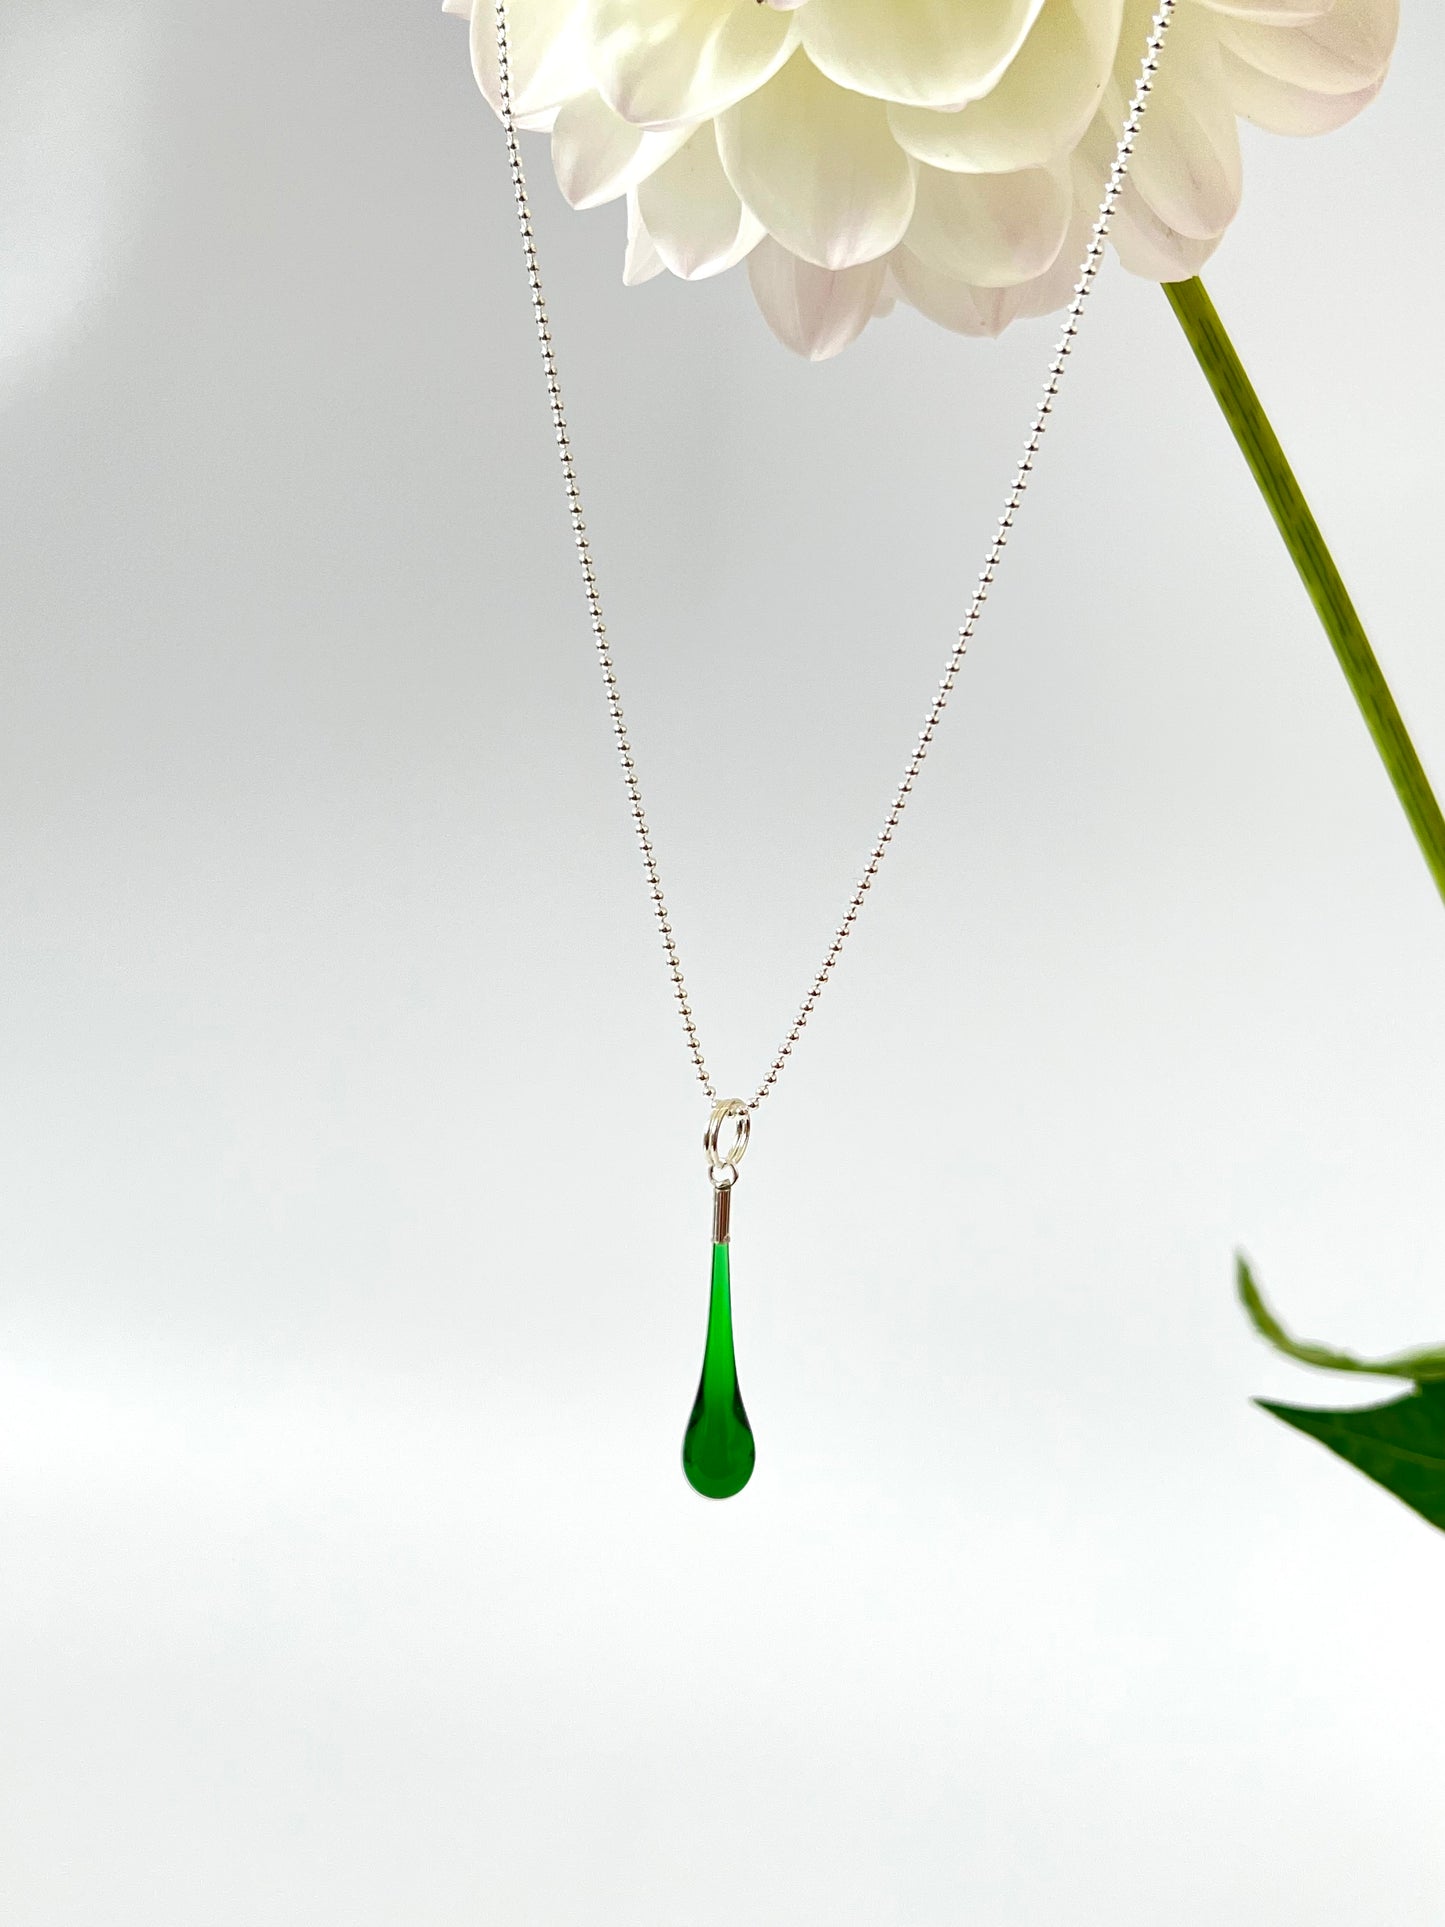 Glass Teardrop Pendant - Emerald